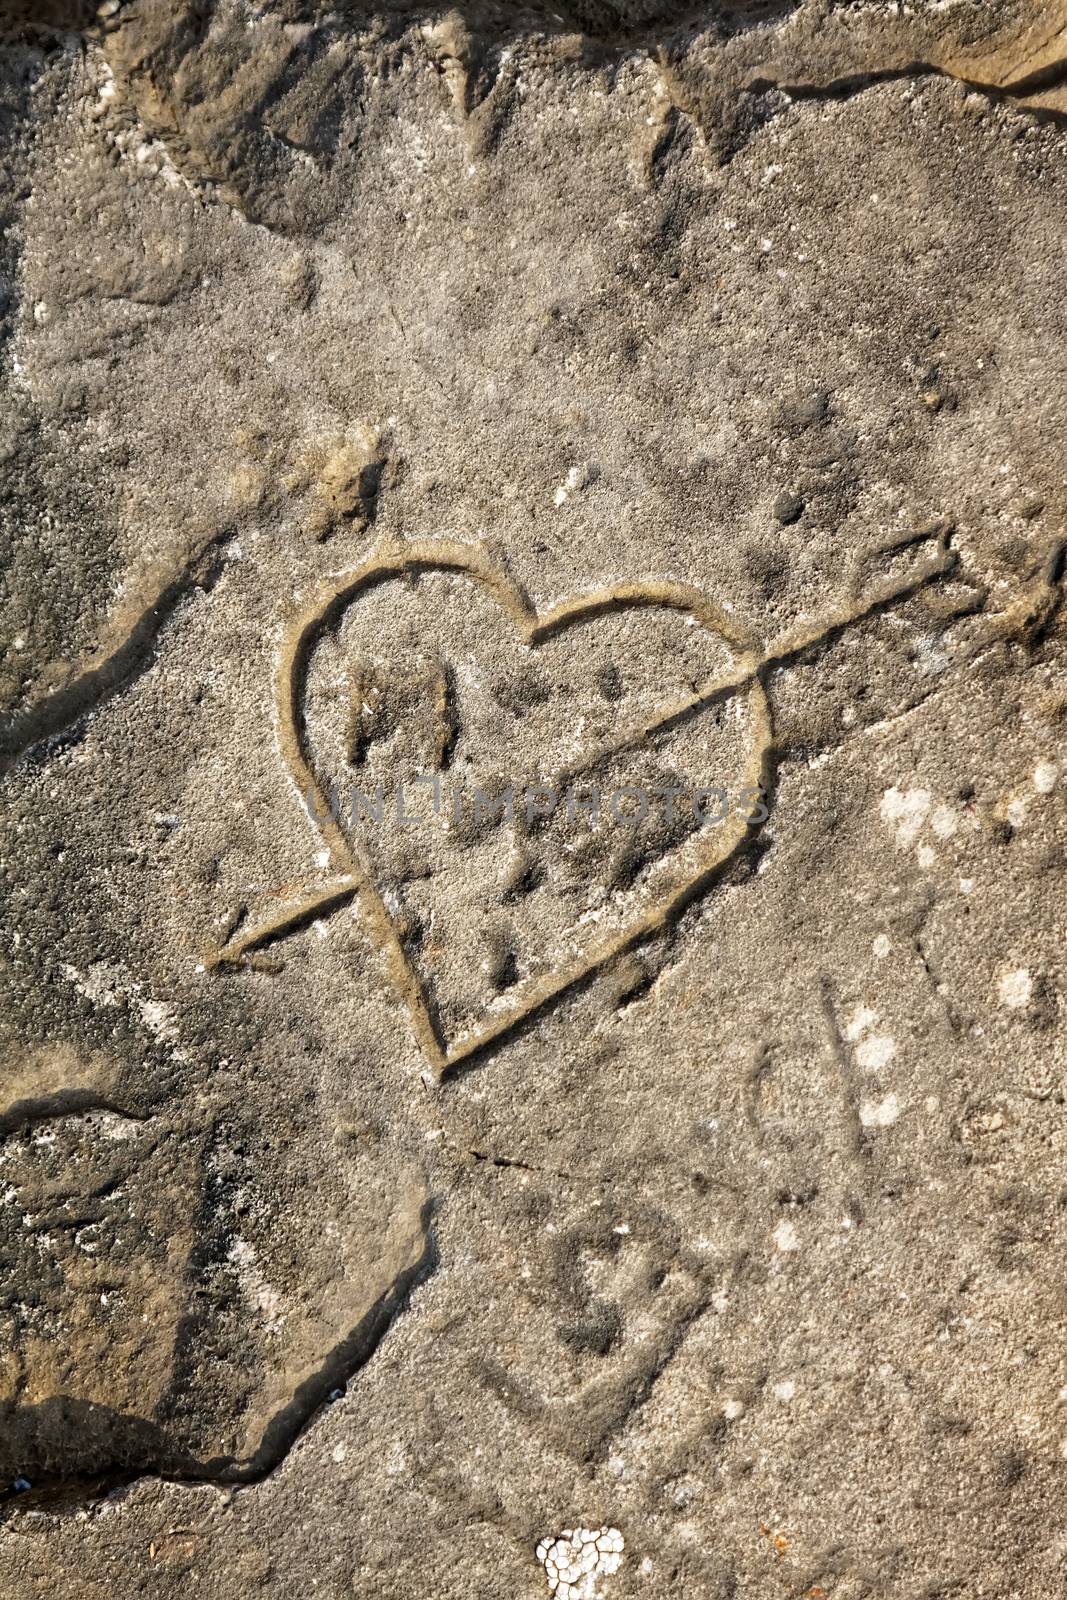 Heart and arrow engraved on rocky beach